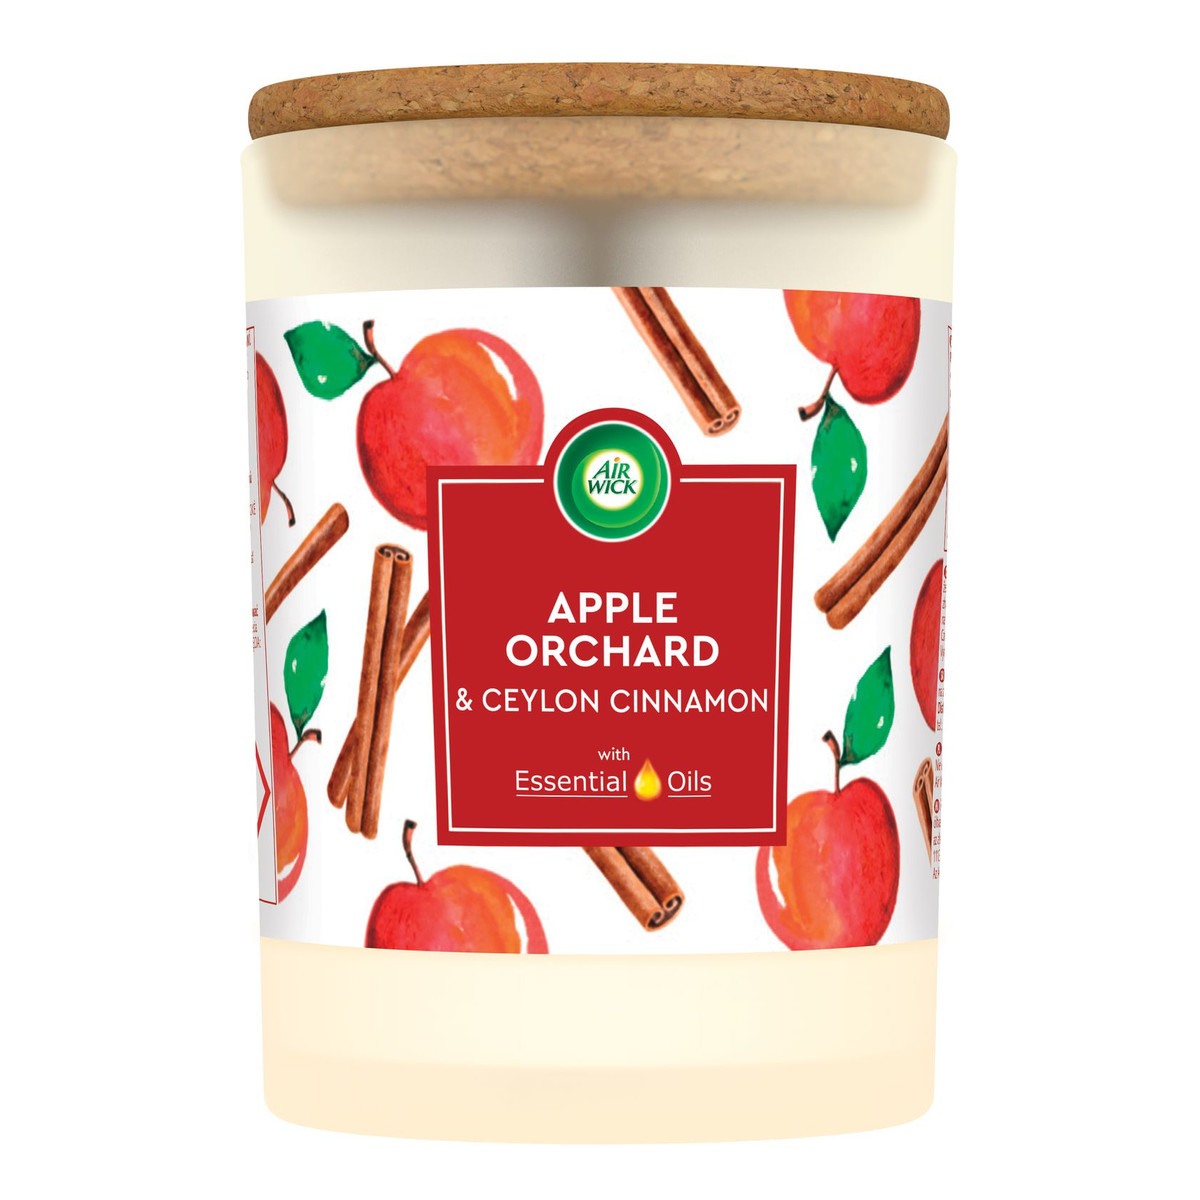 Air Wick Essential Oils świeca zapachowa Apple Orchard & Ceylon Cinnamon Domowe Ciasto z Owocami i Kruszonką 185g